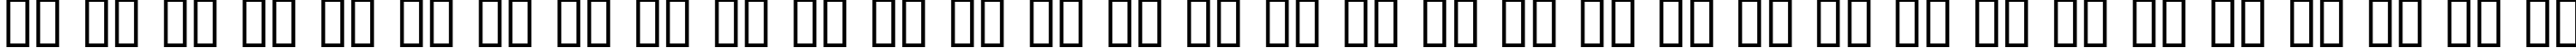 Пример написания русского алфавита шрифтом Courtrai